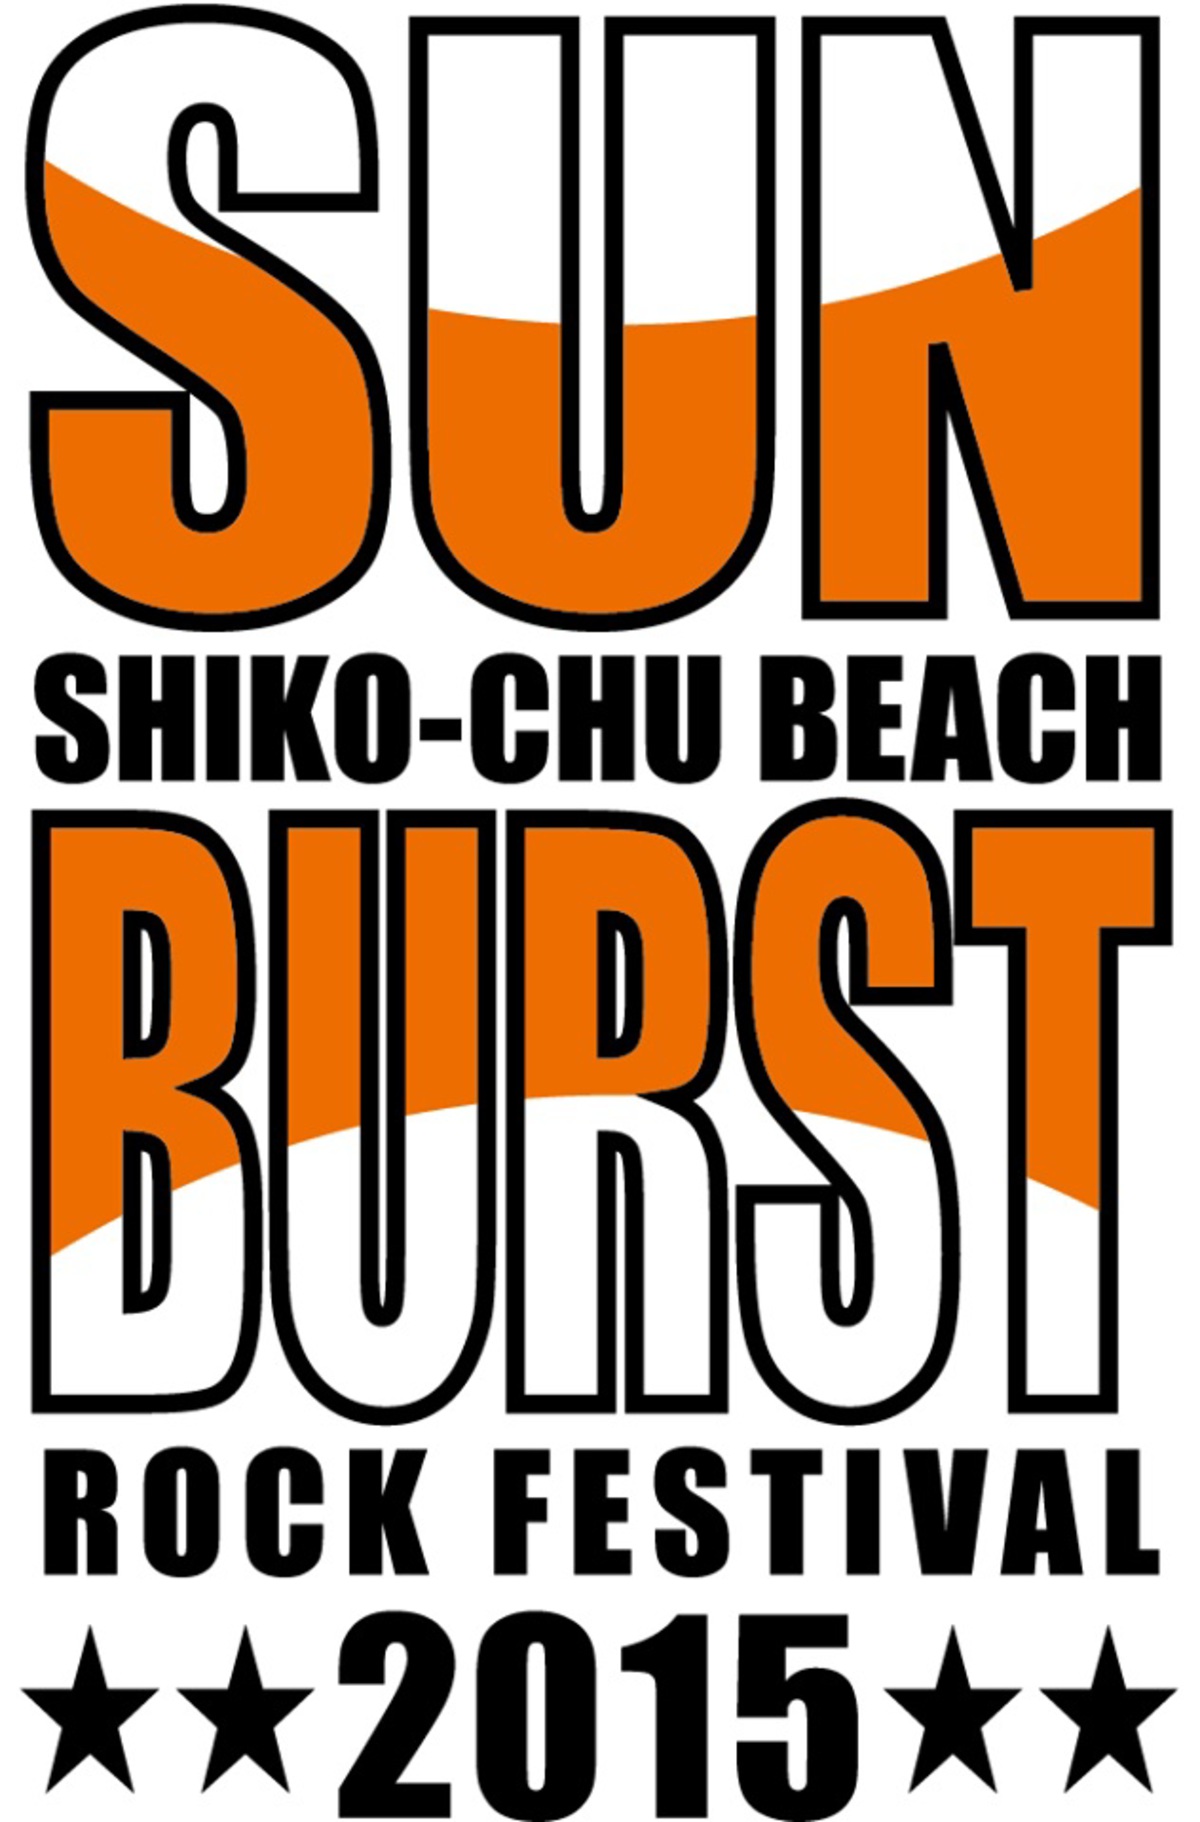 愛媛で開催されるフェス Sunburst15 Shiko Chu Beach Rock Festival 第1弾出演アーティストに9mm Parabellum Bullet The Back Horn 怒髪天ら決定